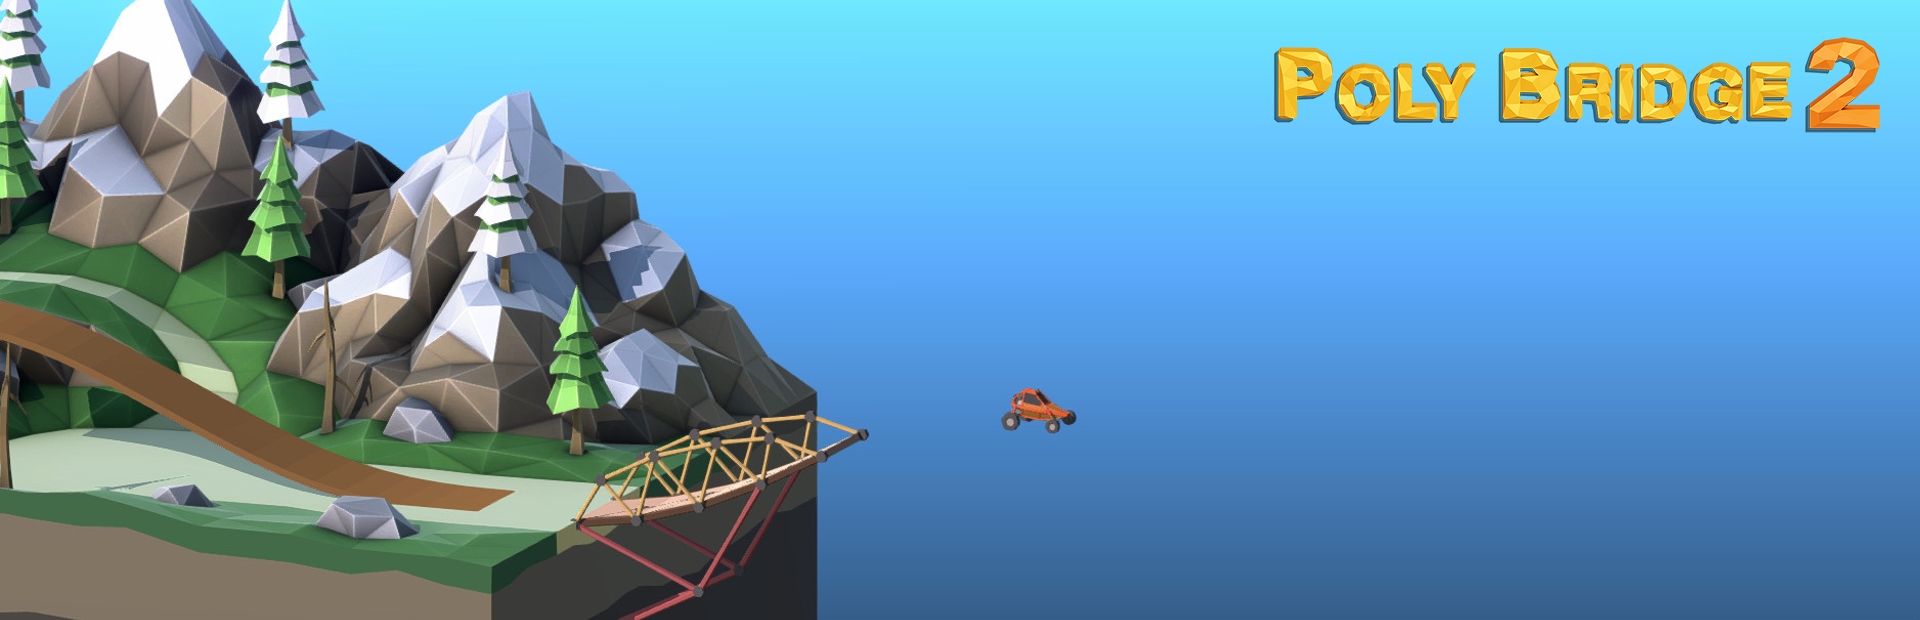 دانلود بازی Poly Bridge 2 برای PC | گیمباتو